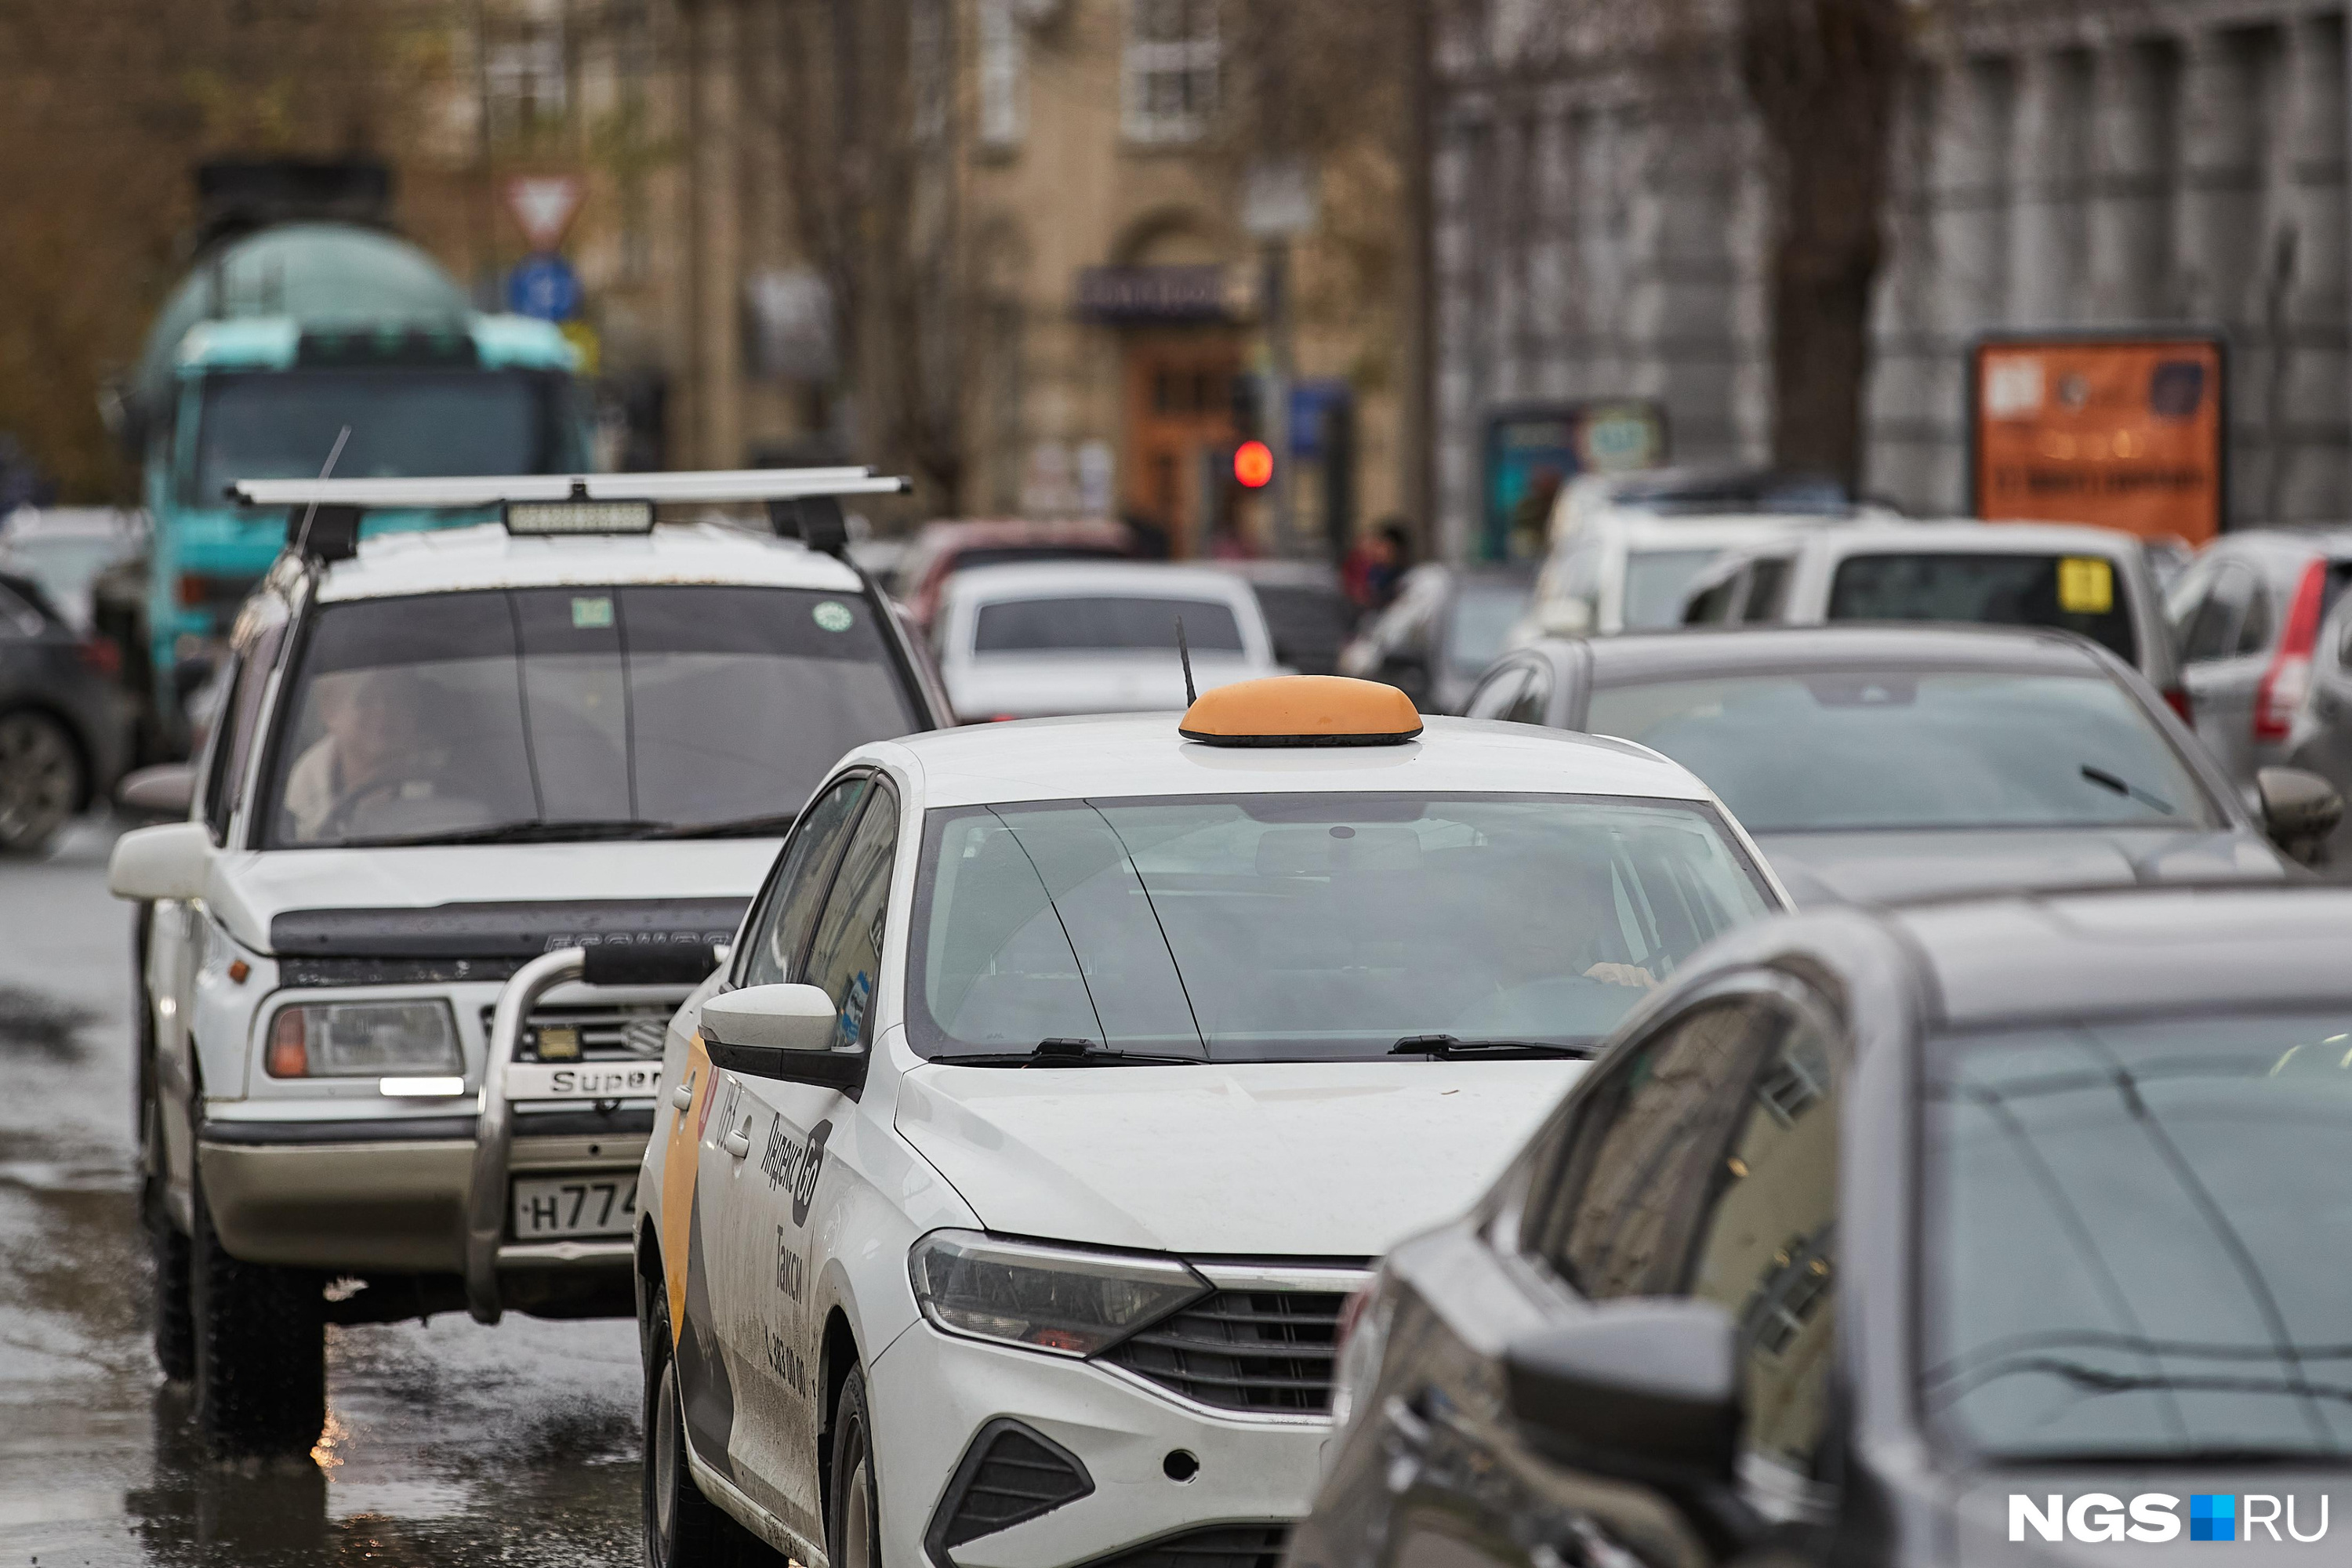 Россияне за услуги такси платят миллиарды, но это выгоднее собственных авто. На сколько еще подорожают поездки